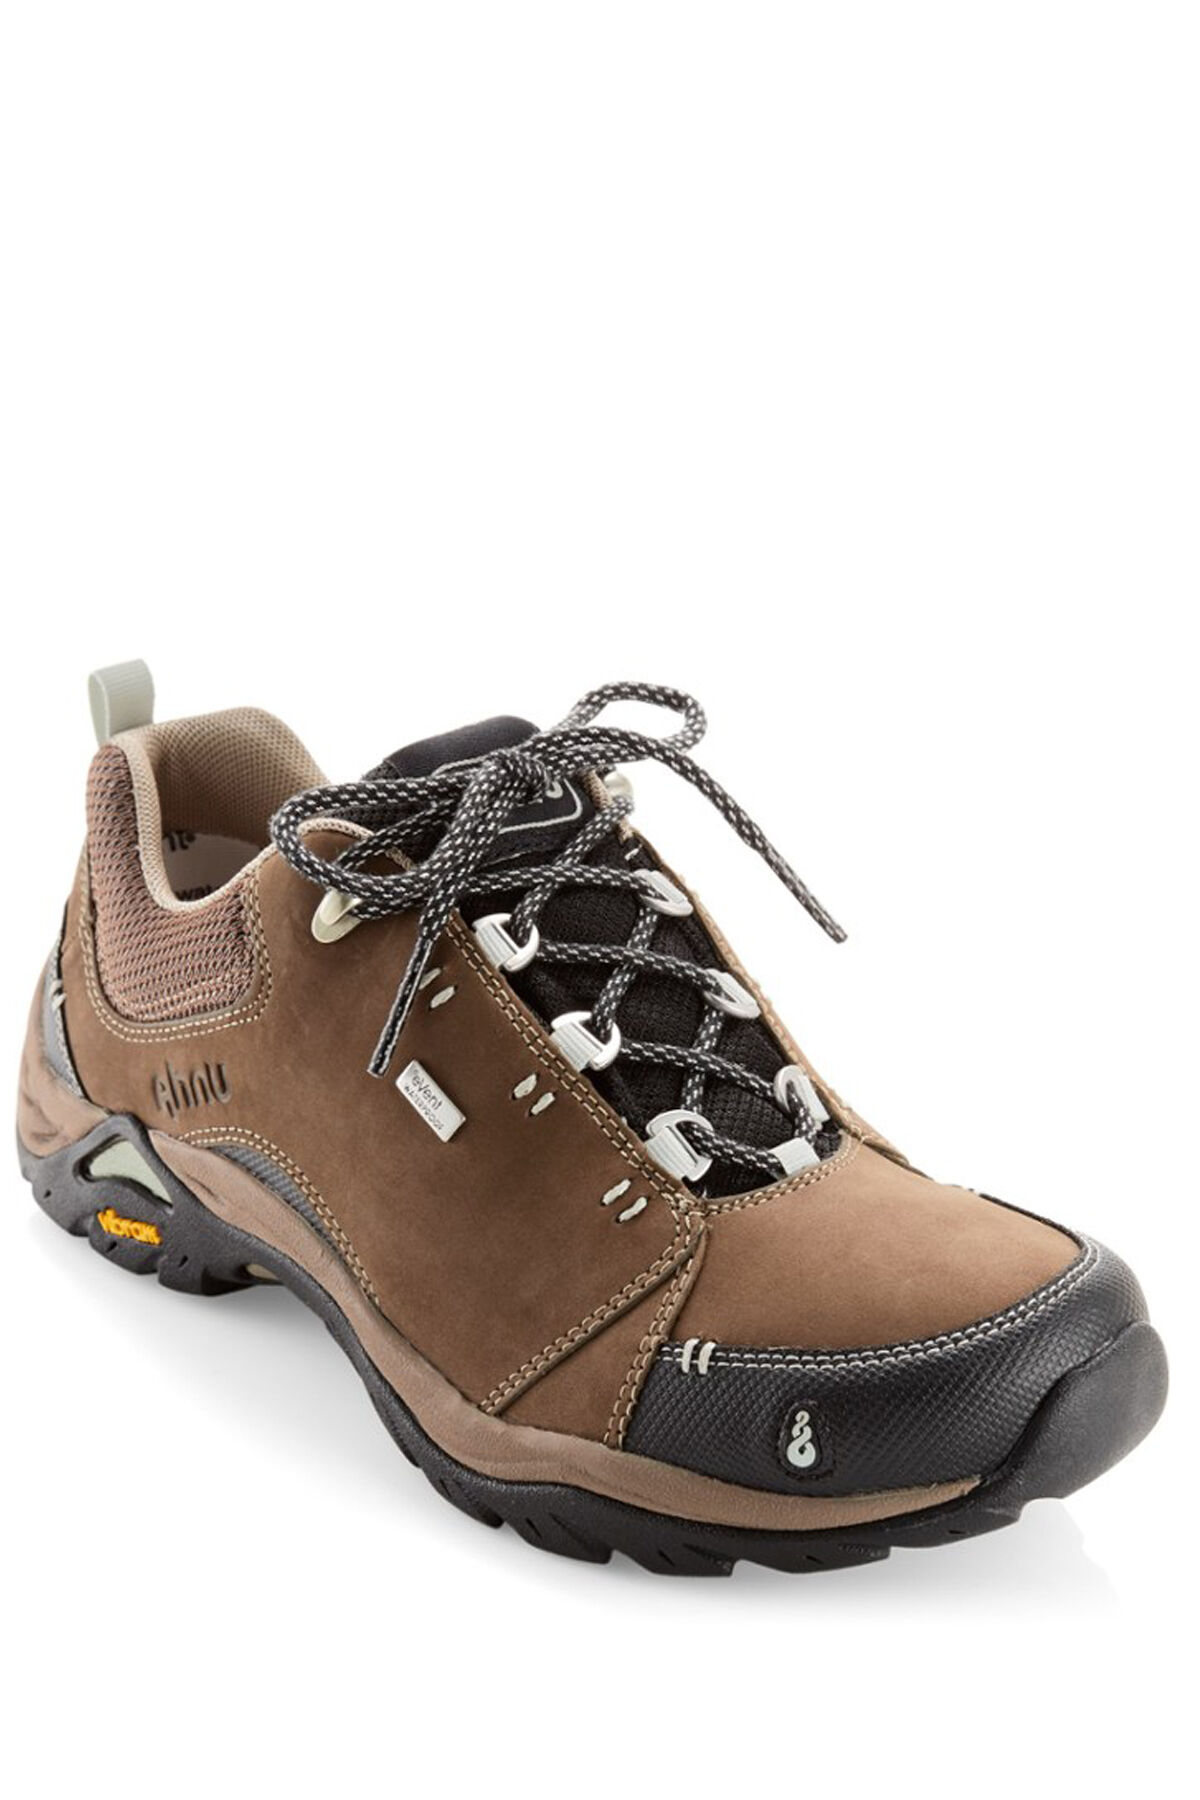 Ahnu Montara II eVent® Hiking Shoes 